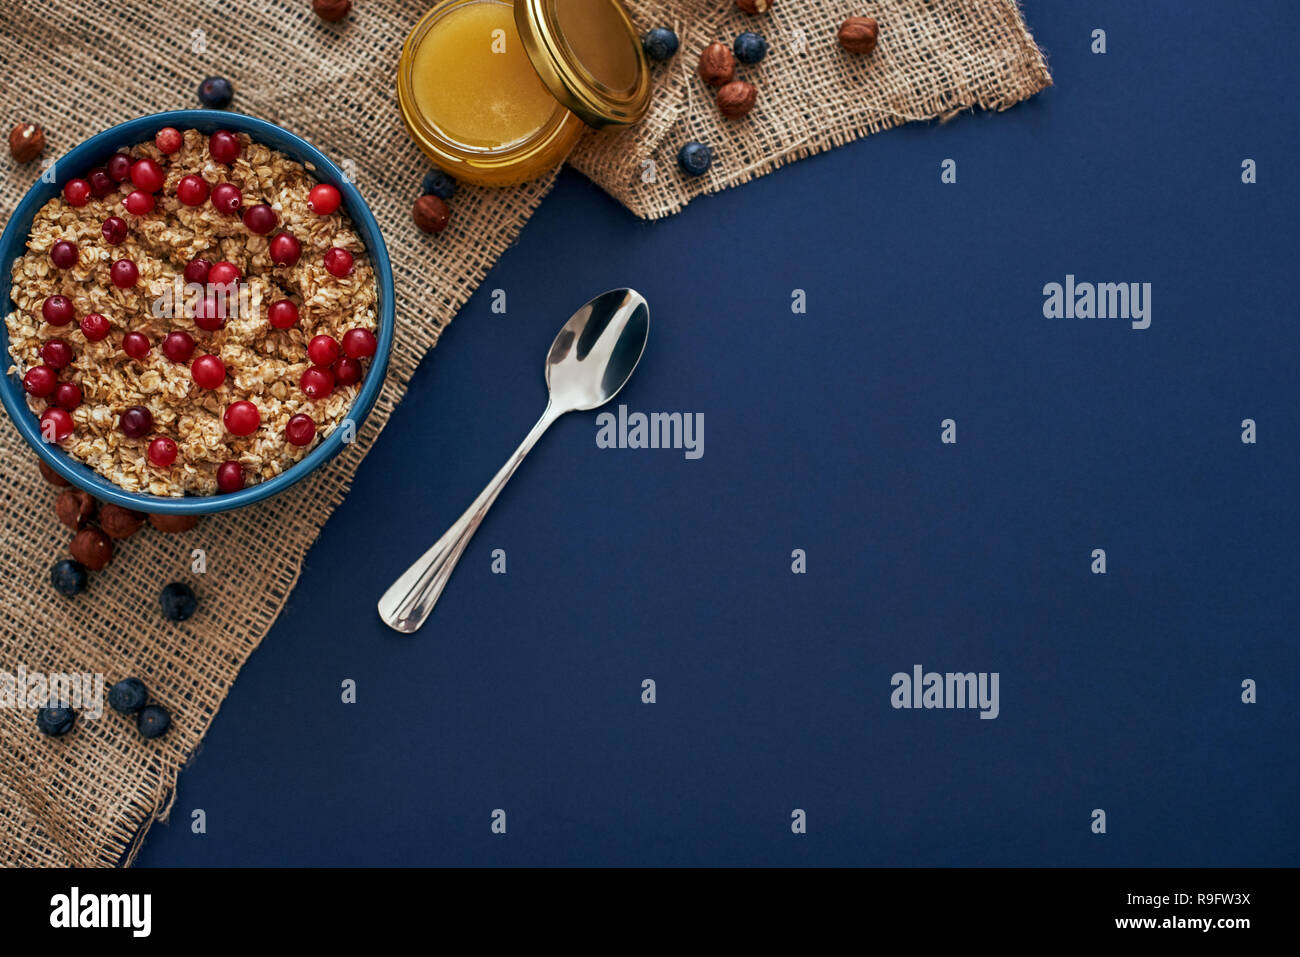 Dolce e sana prima colazione. Foto ritagliata della farina di avena con frutti di bosco, noci e miele. Mirtilli rossi e mirtilli. Foto Stock